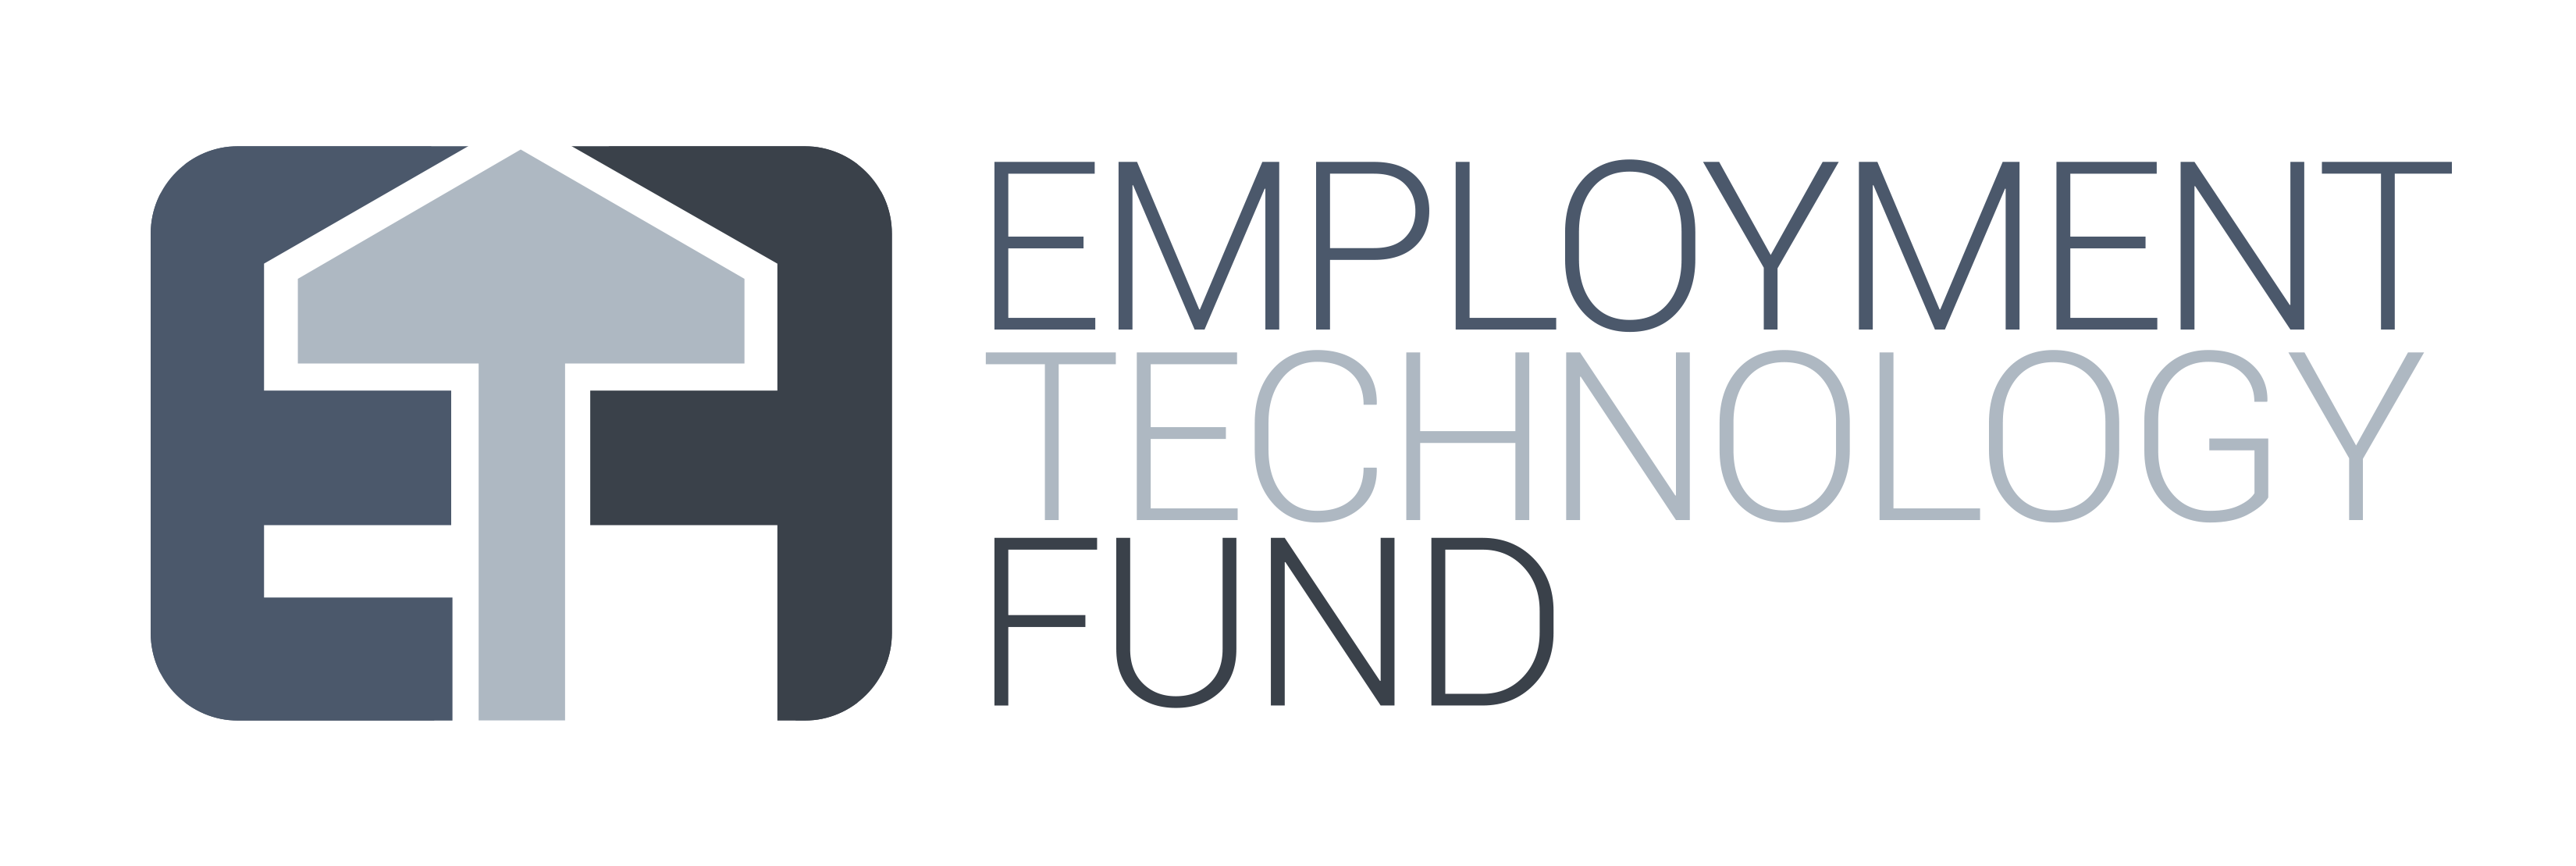 Employment Technology Fund